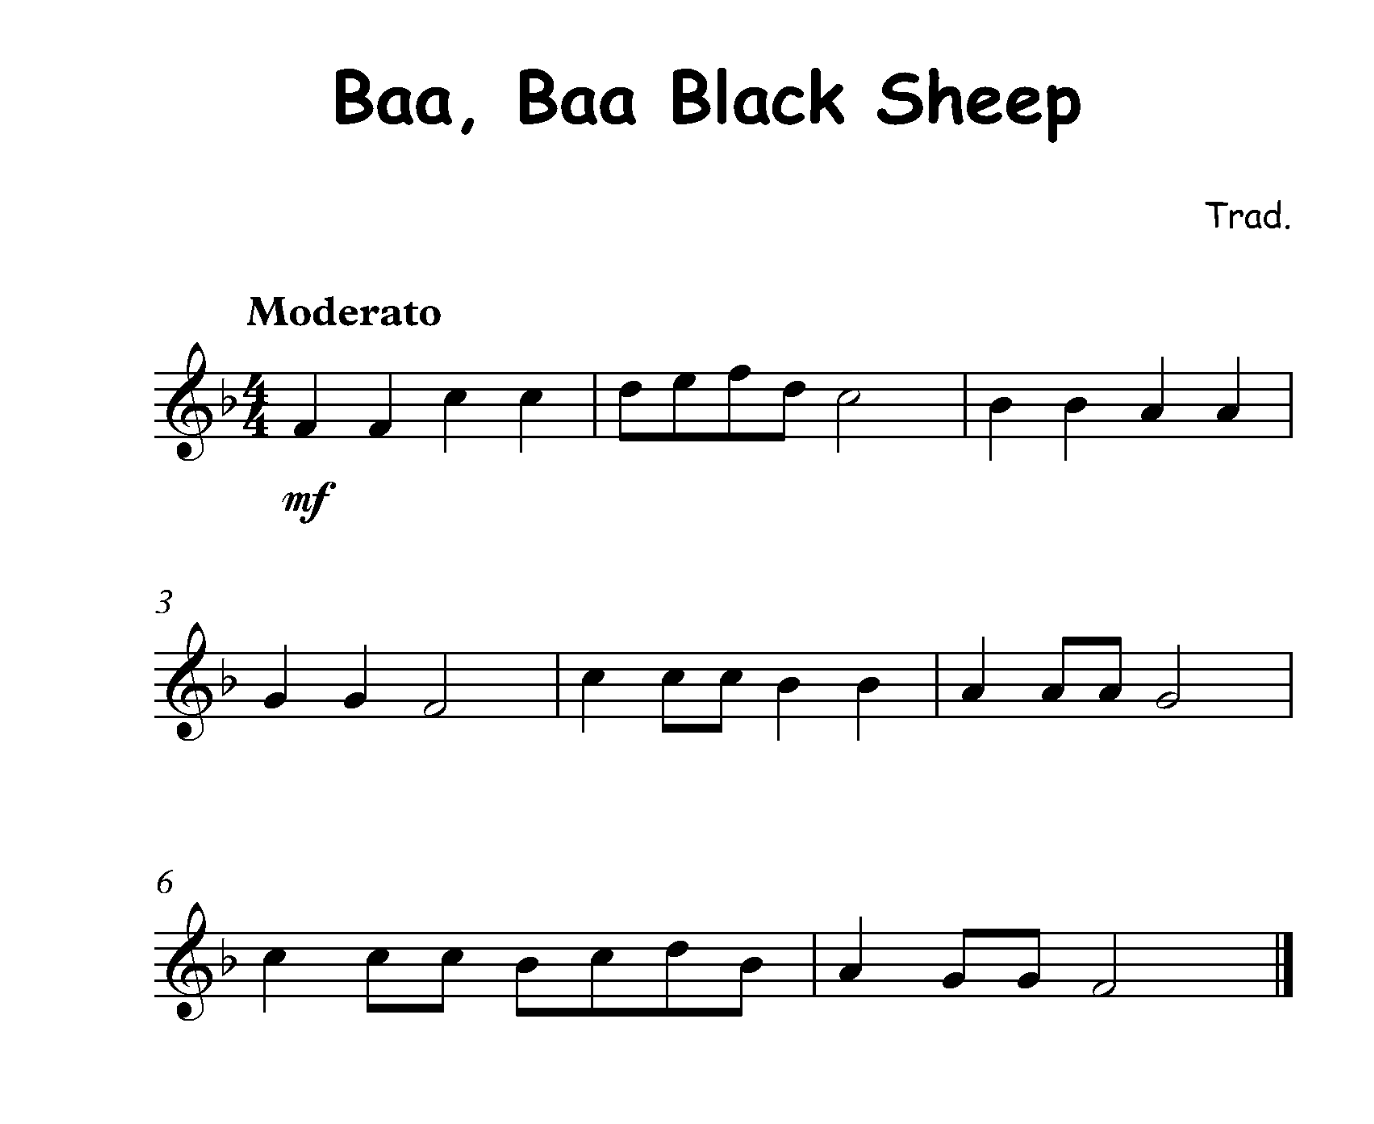 Baa Baa, Black Sheep clarinet sheet music